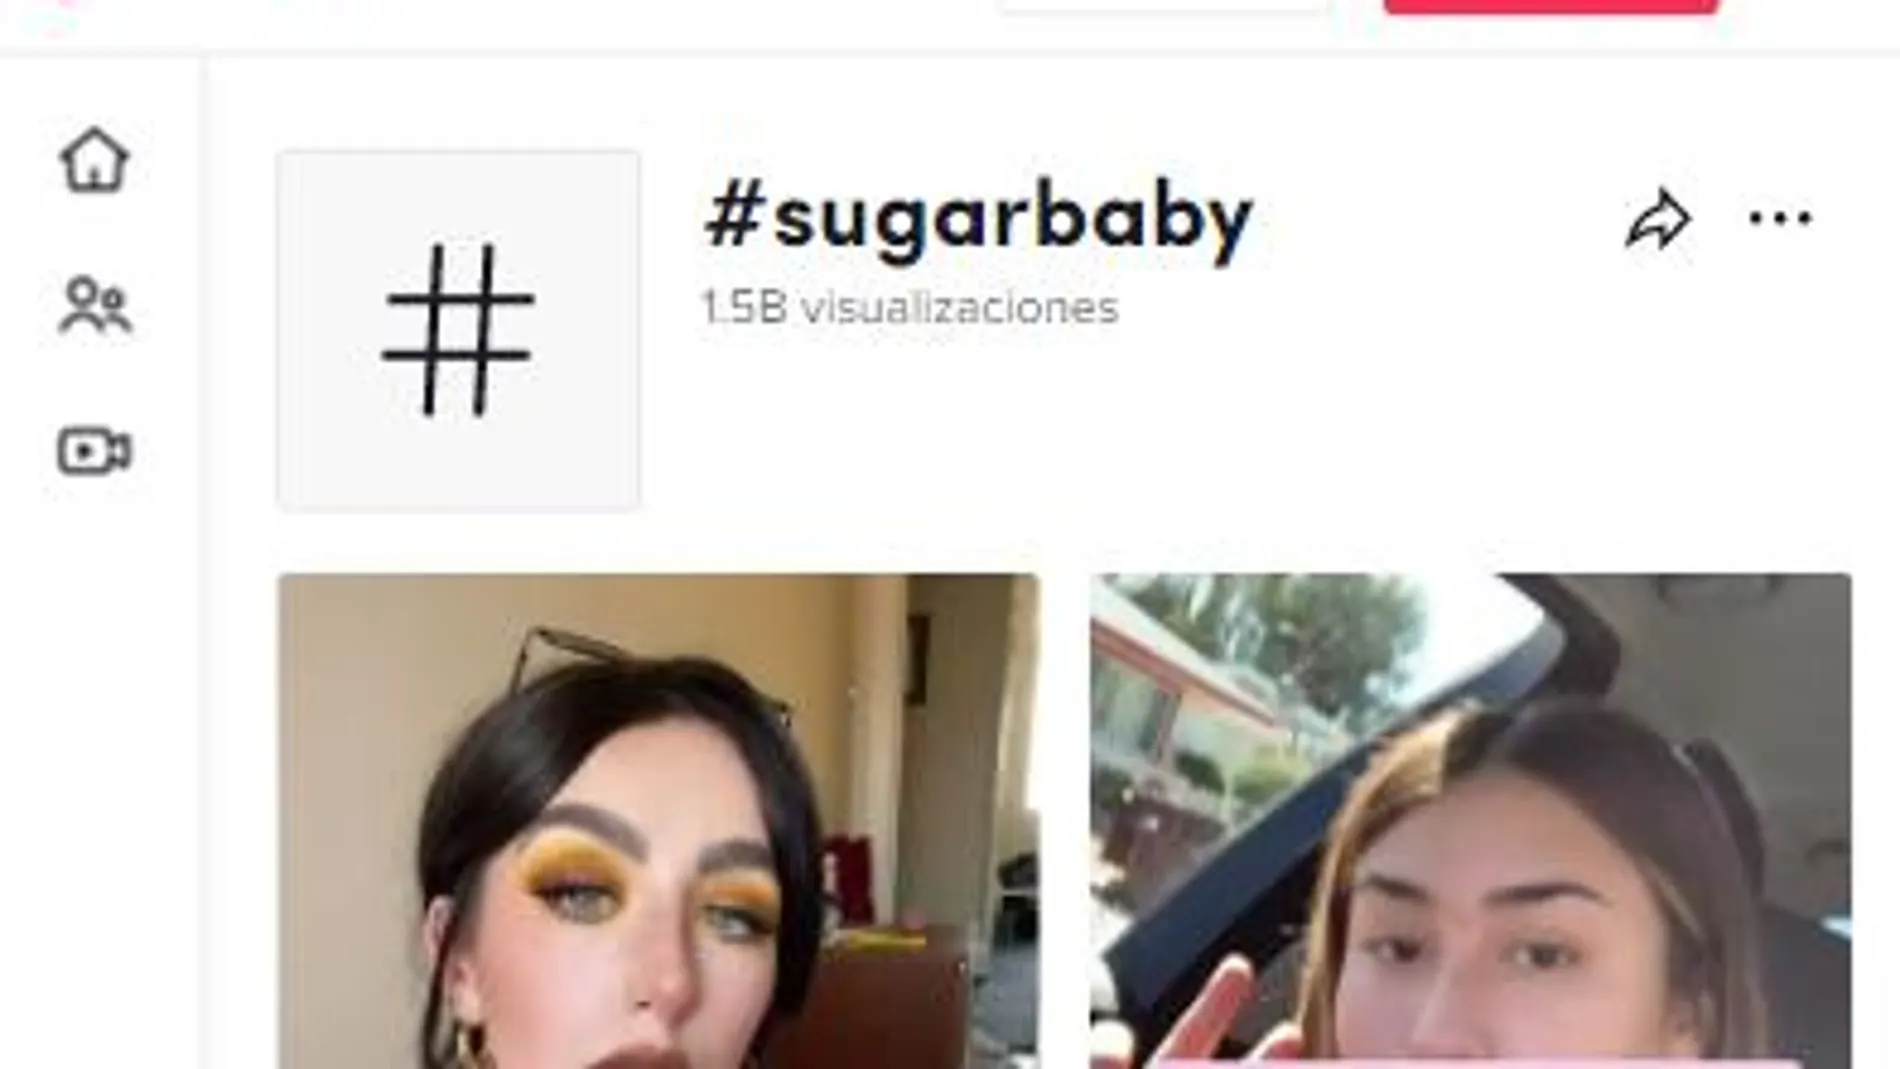 El hashtag #sugarbaby tiene millones de visitas en Tik Tok